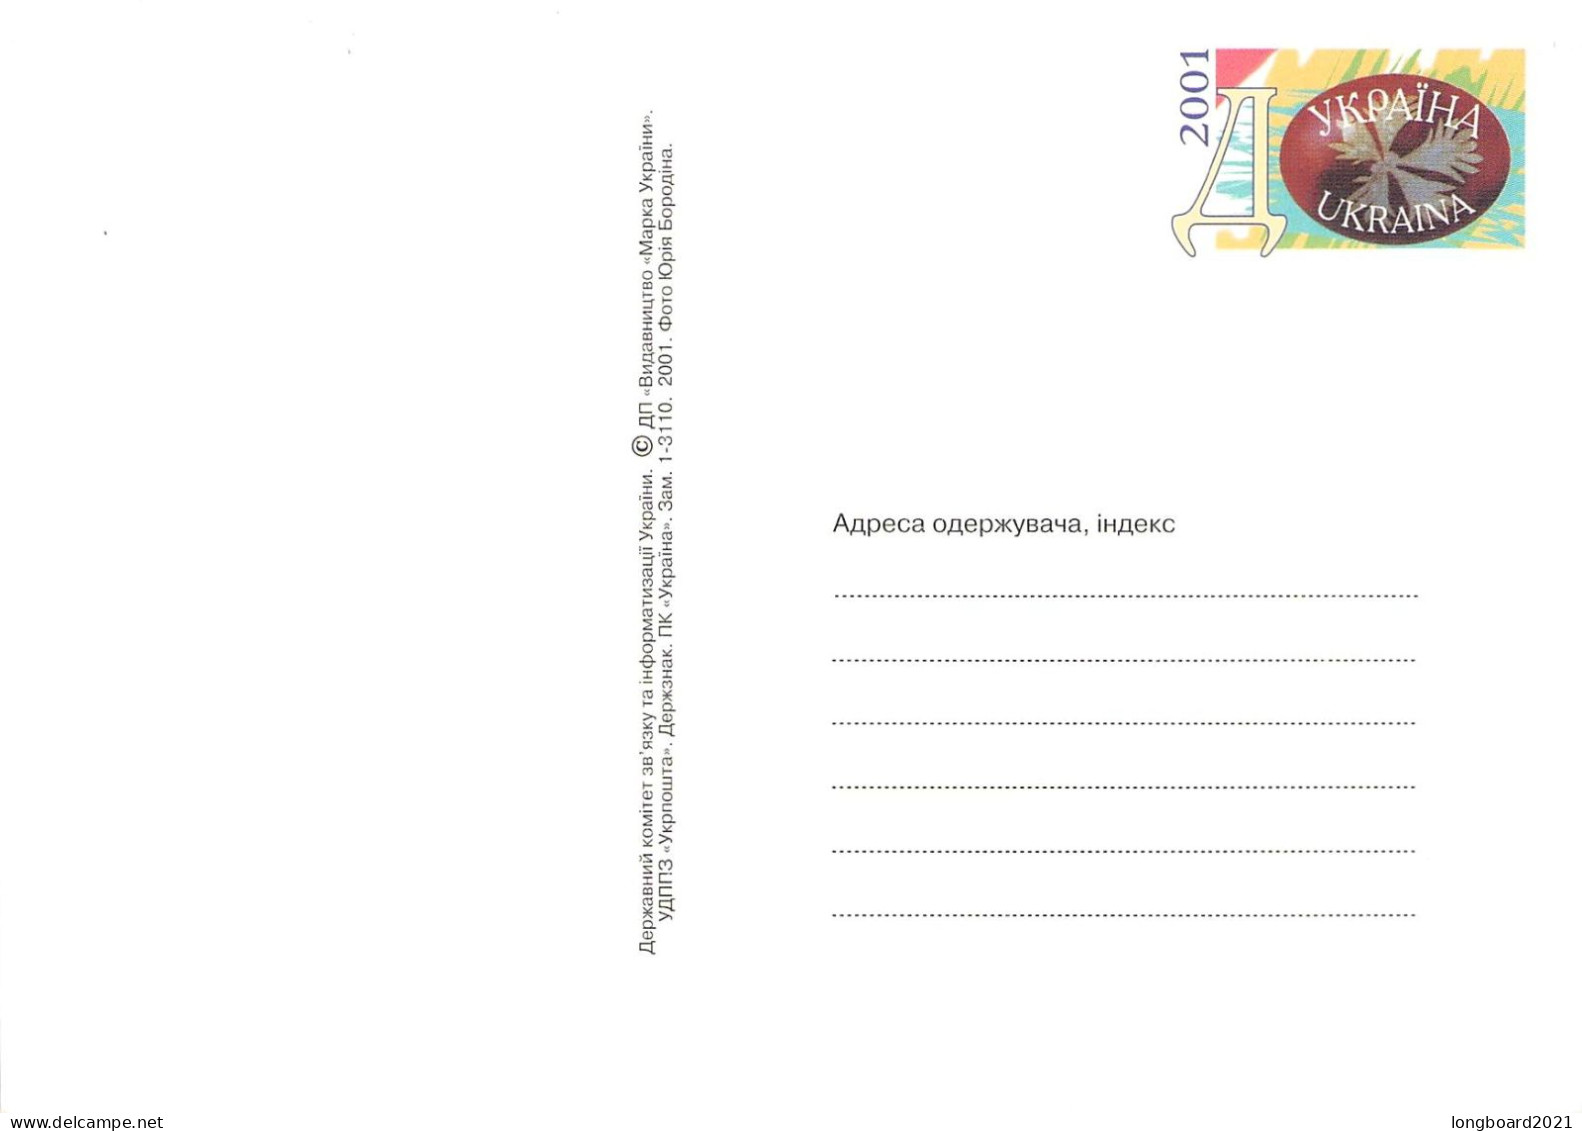 UKRAINE - 2 POSTCARDS 19.3.2001 Mi PSo 26-30 ** / *515 - Ukraine